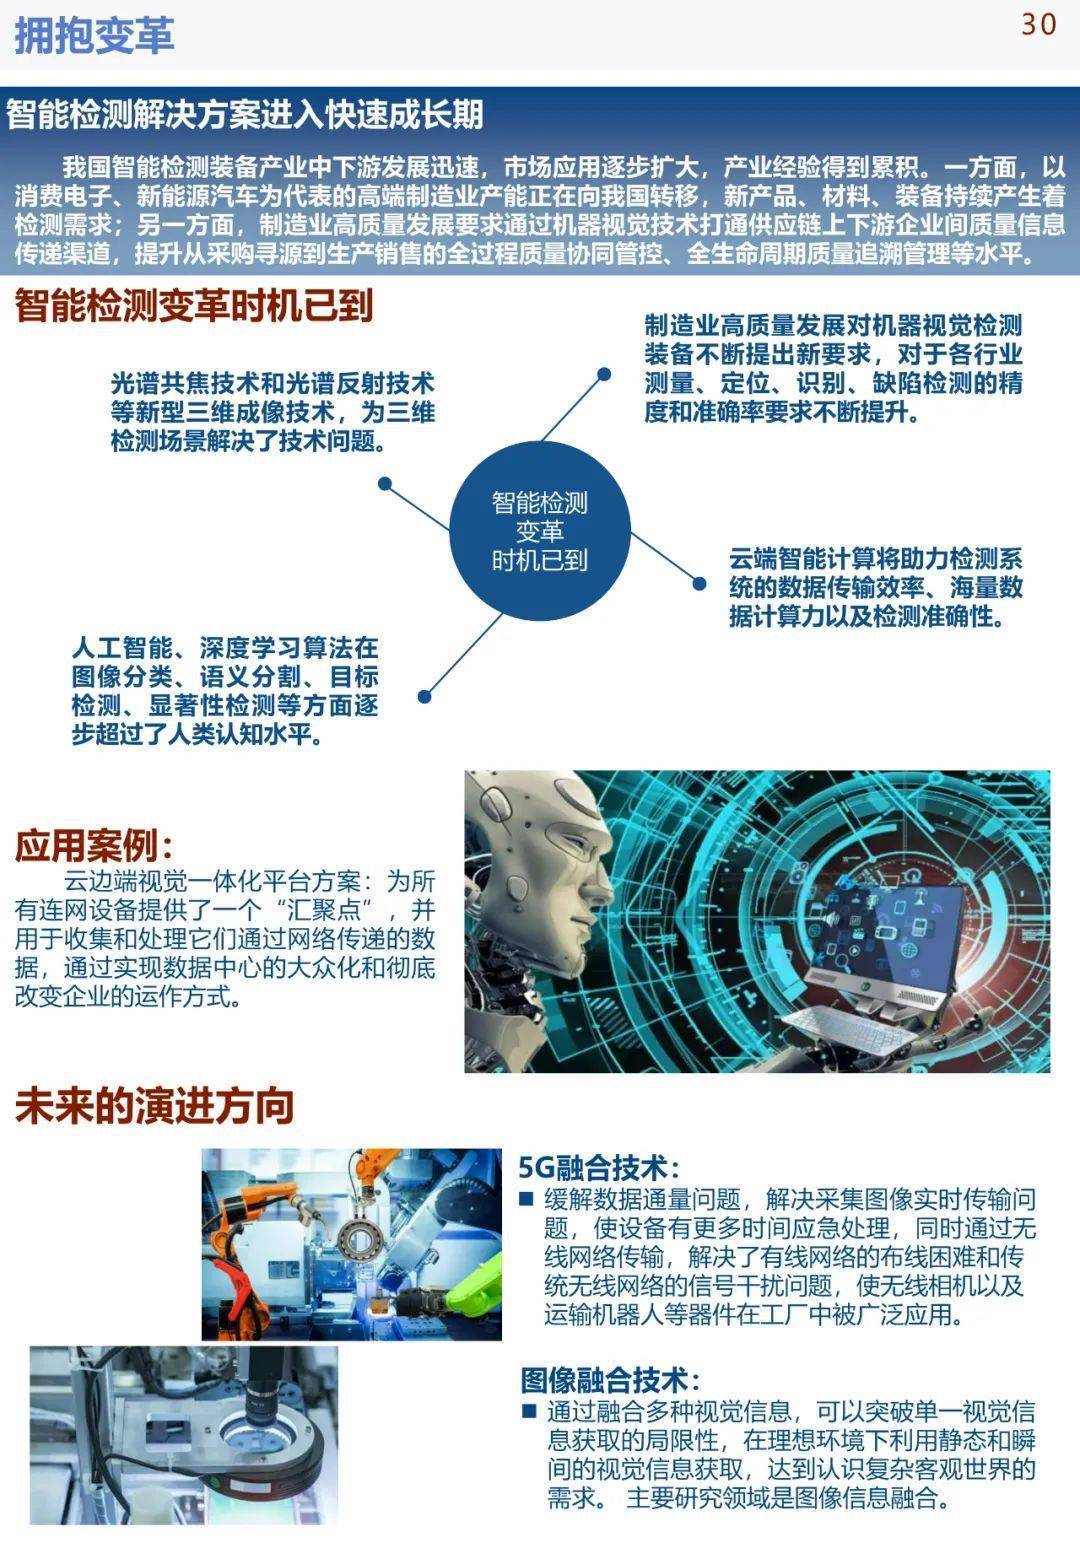 中国手机华为系统下载
:《中国智能制造发展研究报告：系统解决方案》发布(可下载)-第34张图片-太平洋在线下载